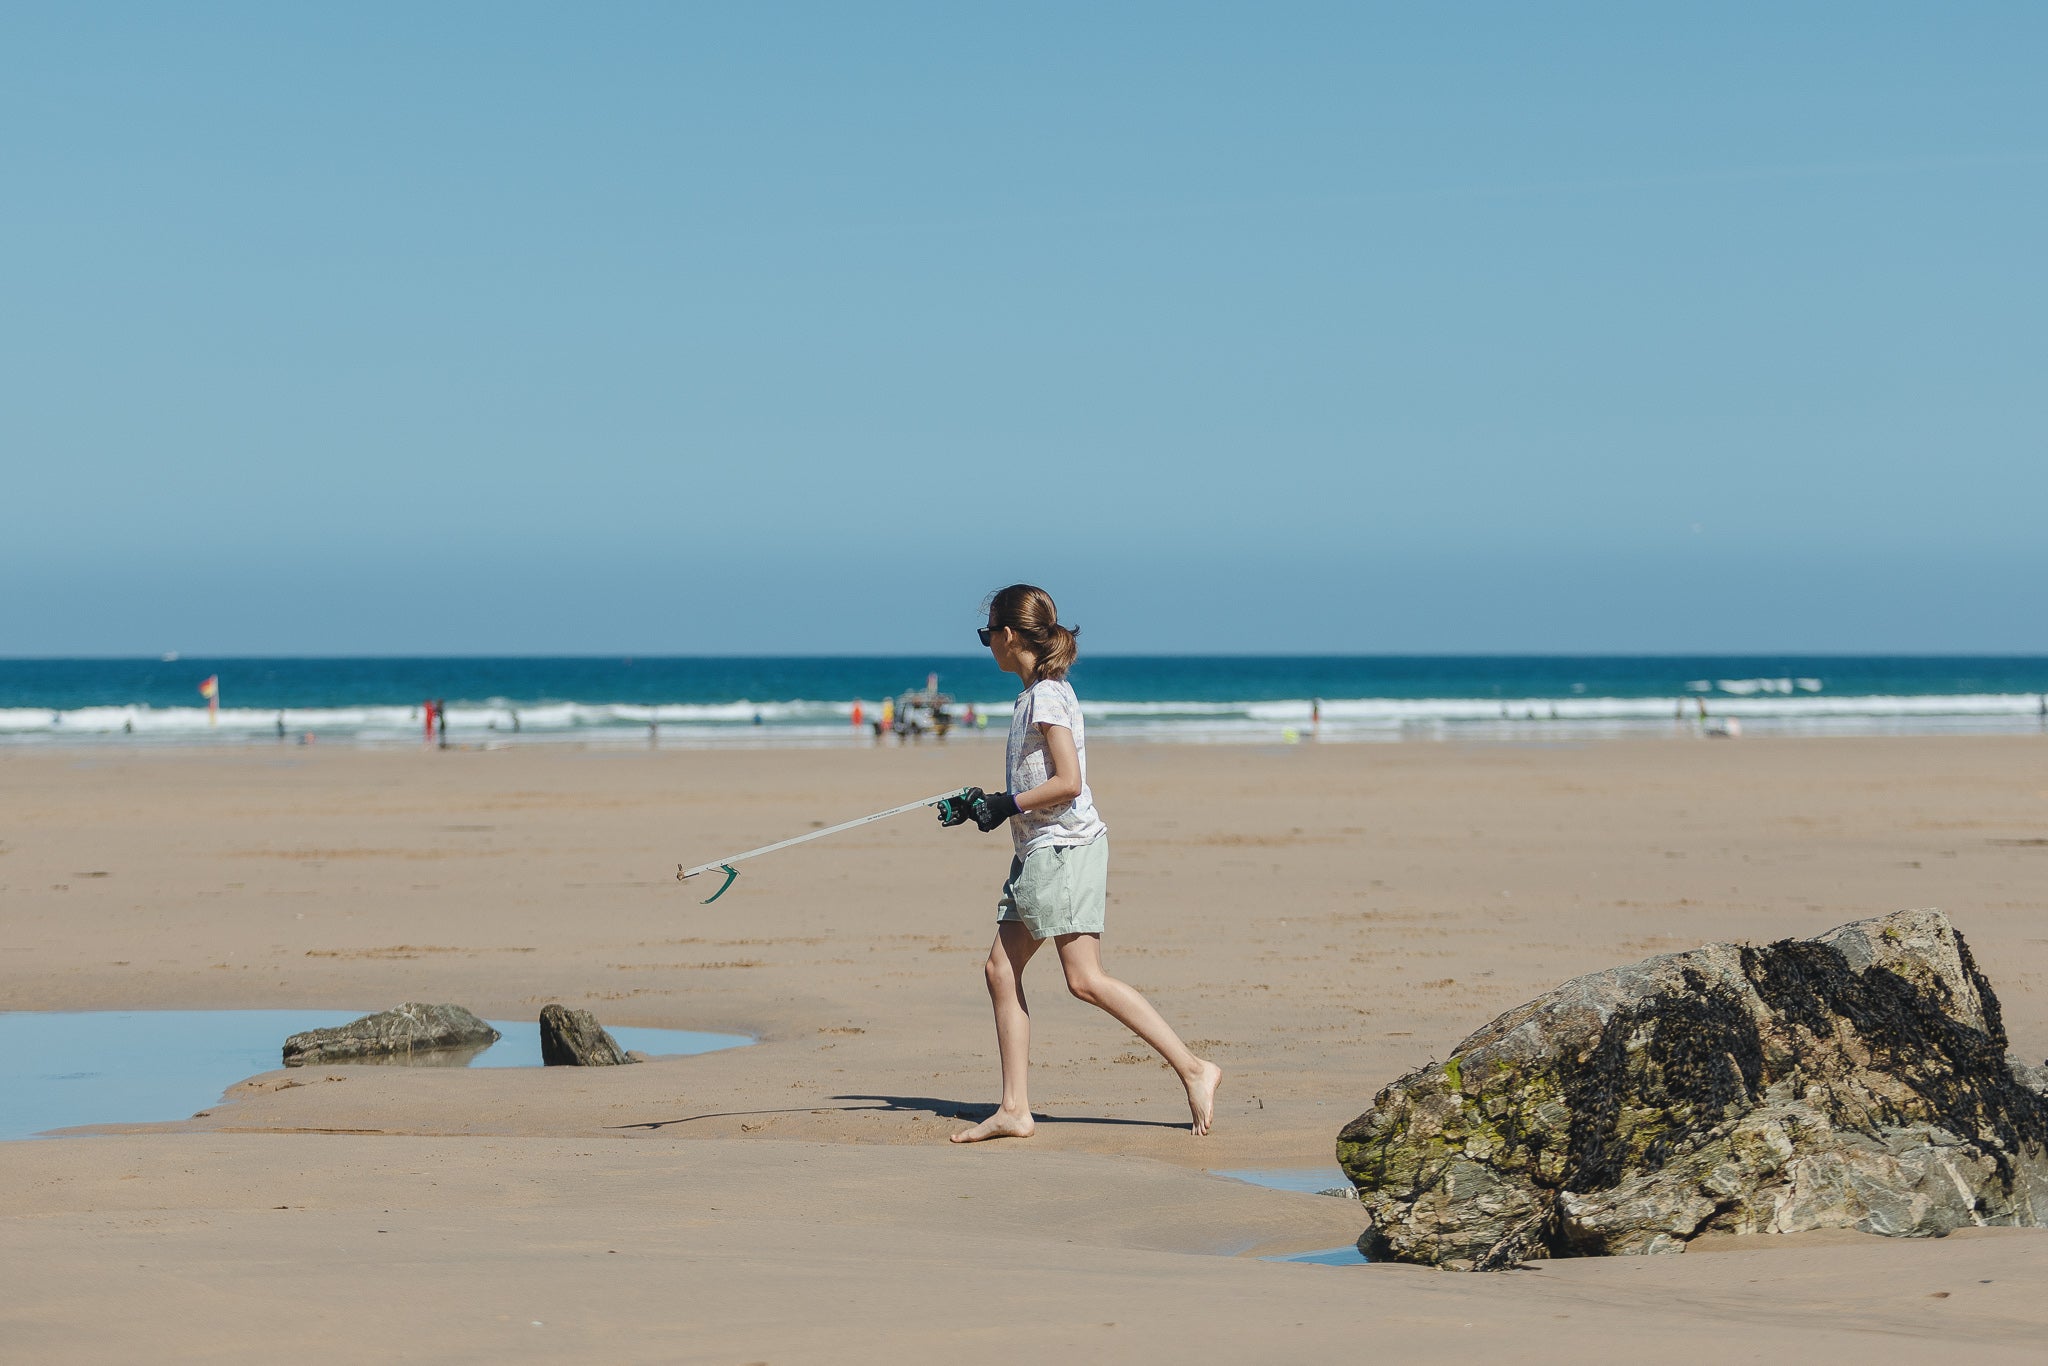 Child walking along the beach holding a litter picker